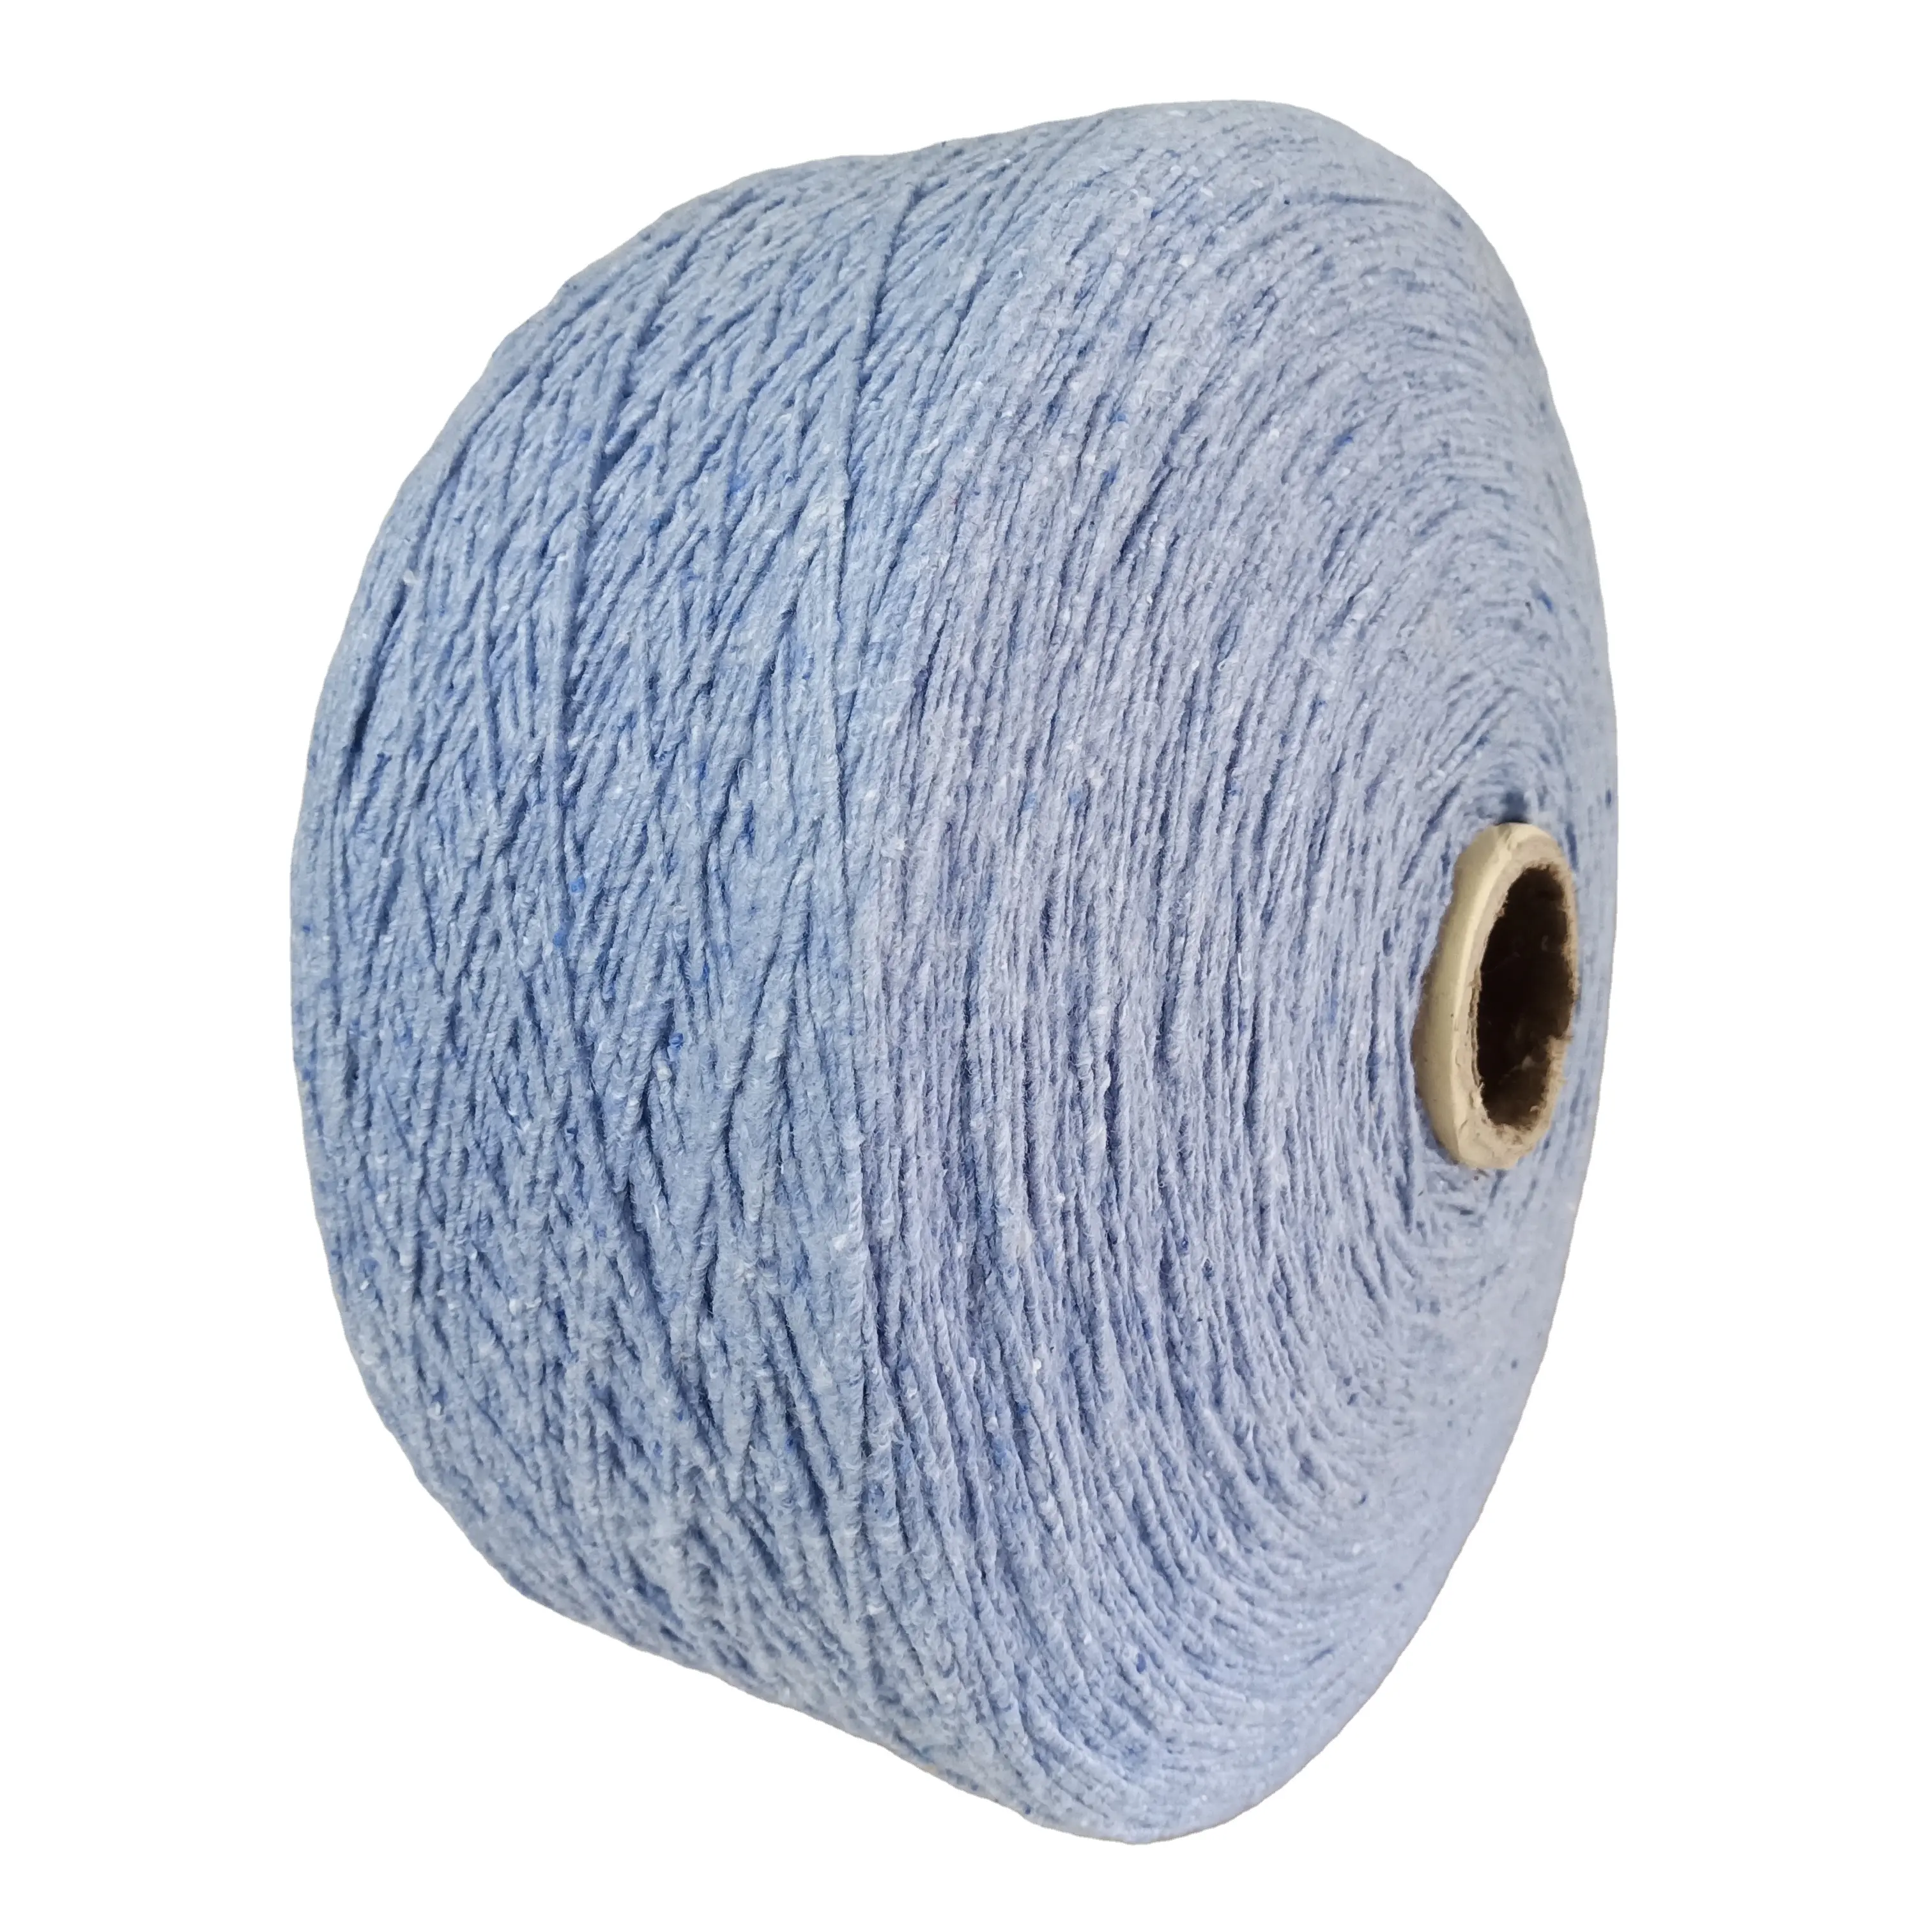 Fio de algodão regenerado para esfregão ou cobertor, fio grosso de algodão para esfregão ou cobertor nm1/1 ou nm1.3